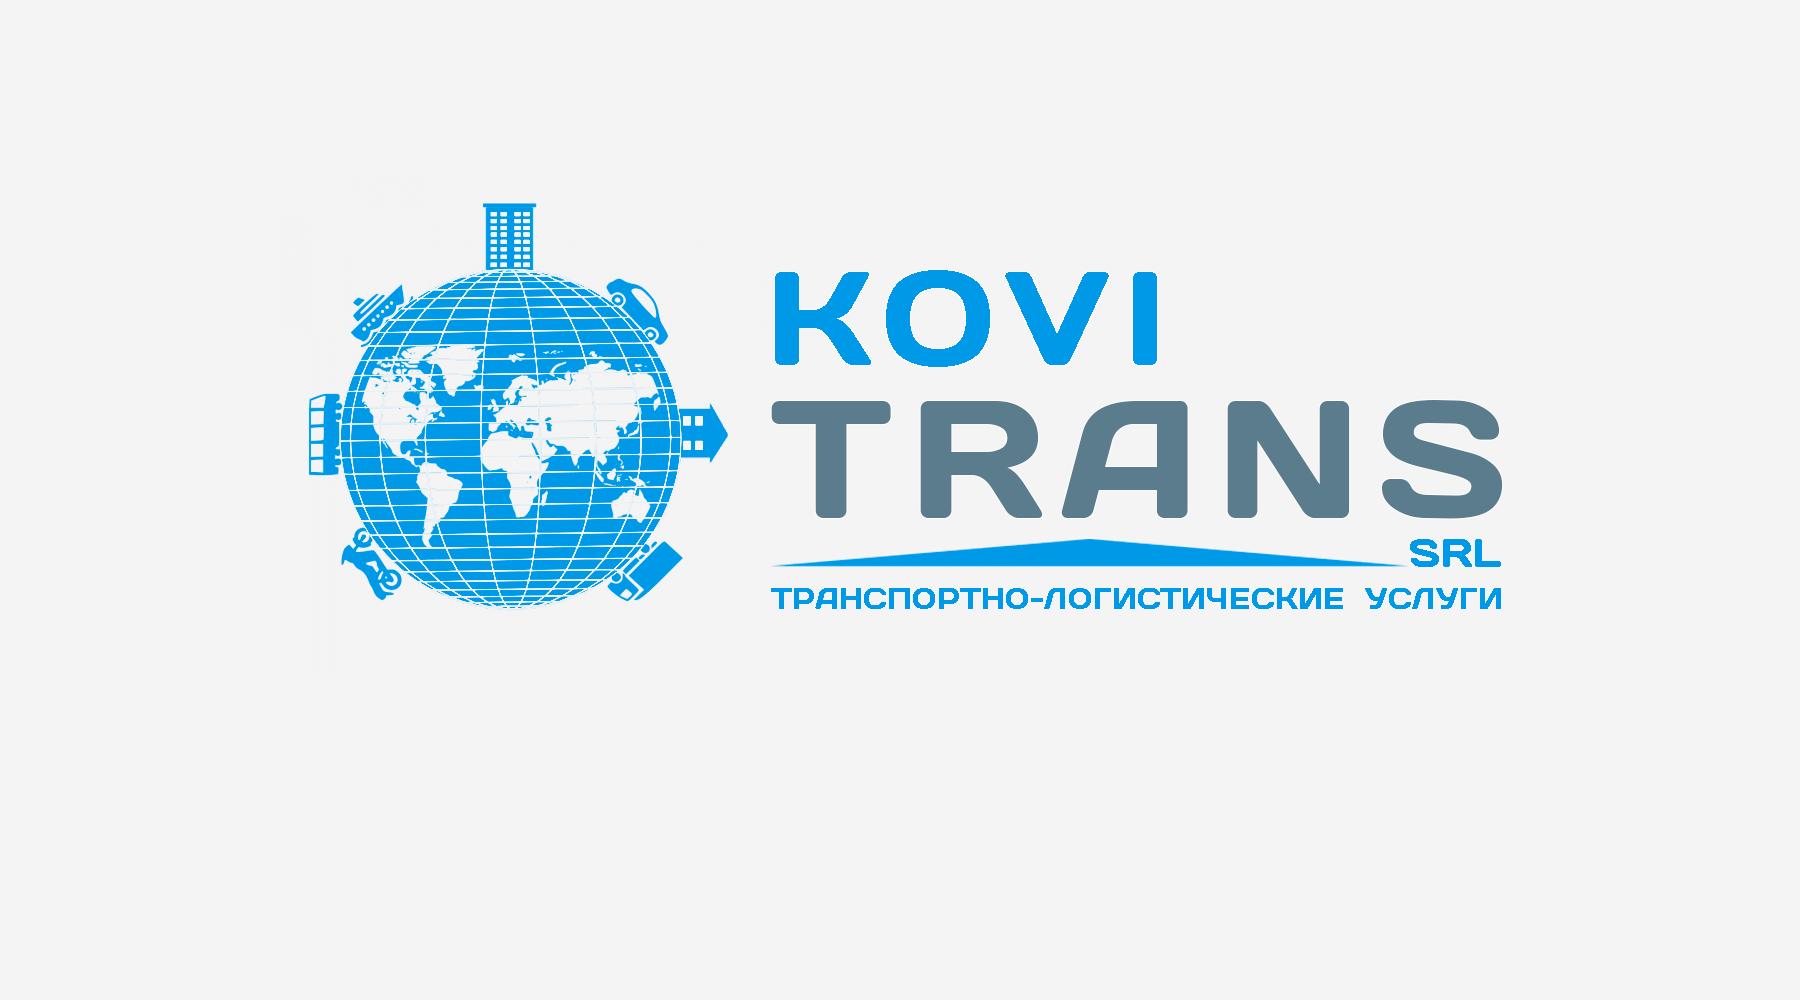 "Exim Trans" логотип. Логистические компании Молдовы. Логотип транспортно логистической компании. Kovi Trans SRL отзывы. Фирмы кишинева